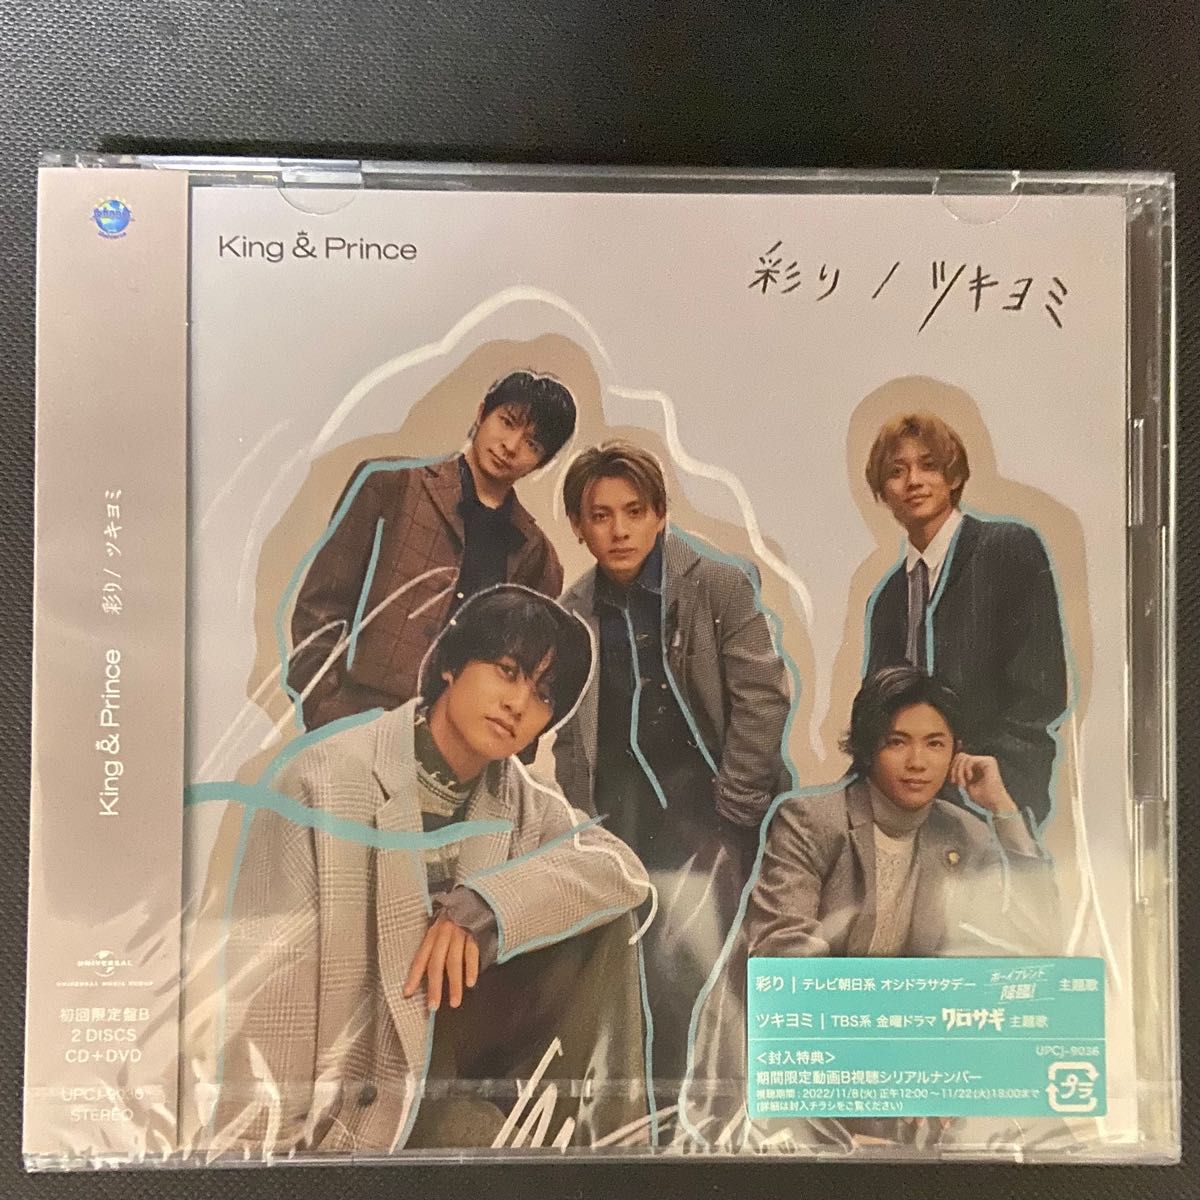 初回限定盤B DVD付 King & Prince CD+DVD/彩り/ツキヨミ 22/11/9発売 キンプリ